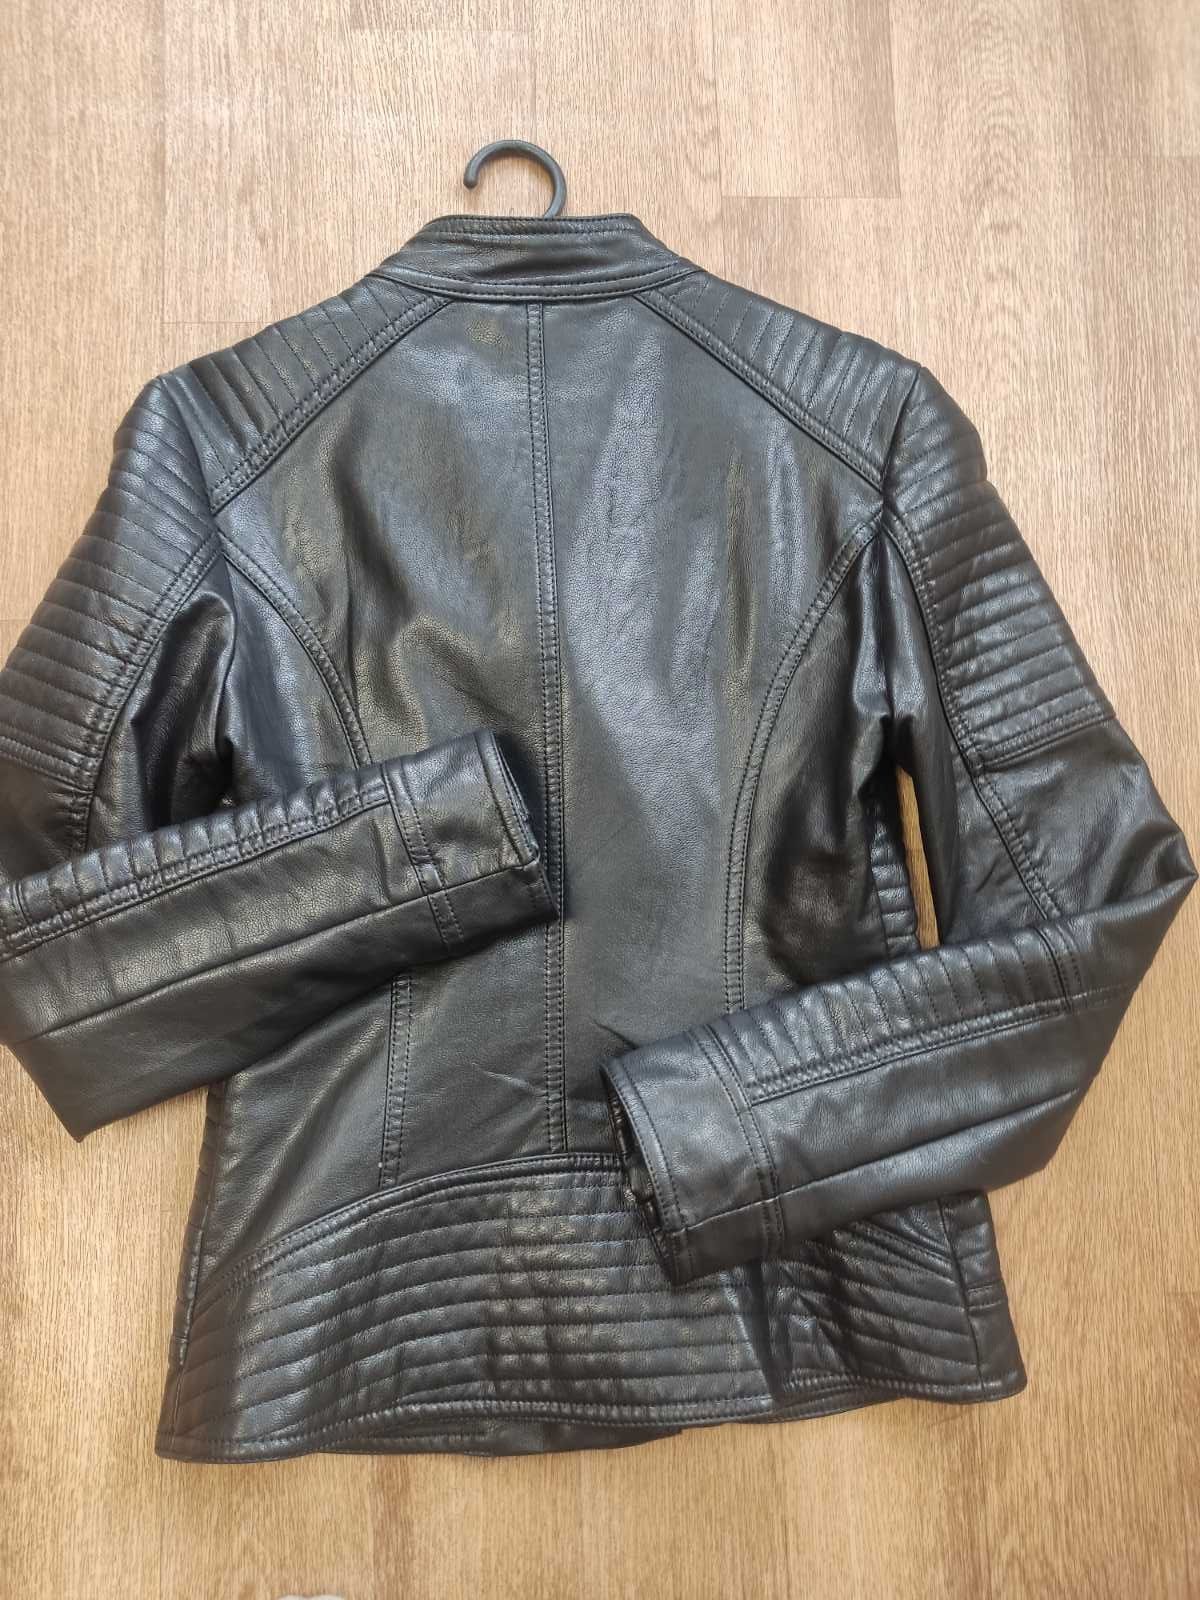 Продам косуху куртку кожанную р. М 42-44 качество люкс